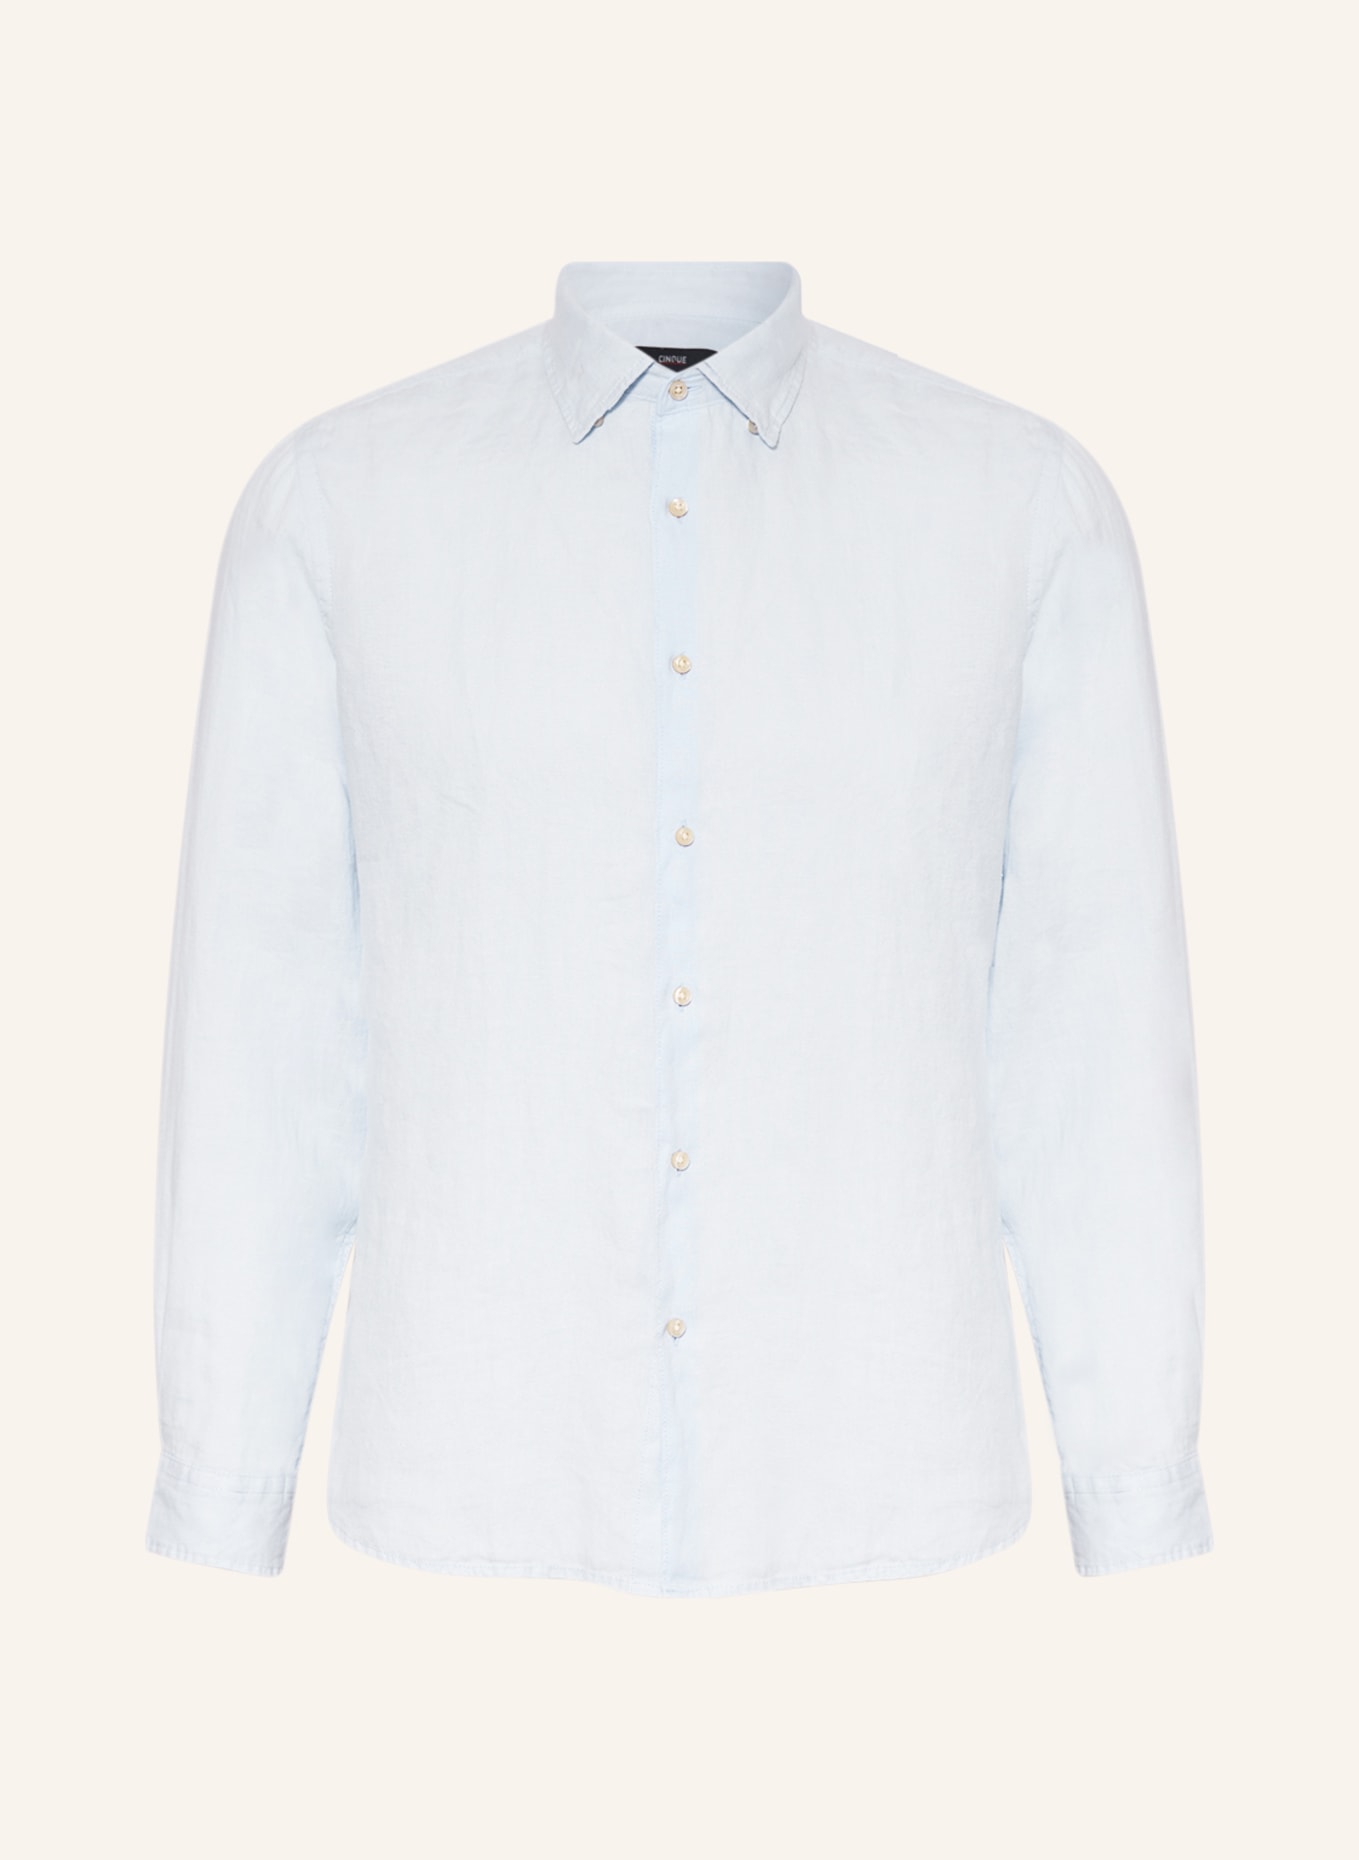 CINQUE Linen shirt CISTEVE slim Fit, Color: LIGHT BLUE (Image 1)